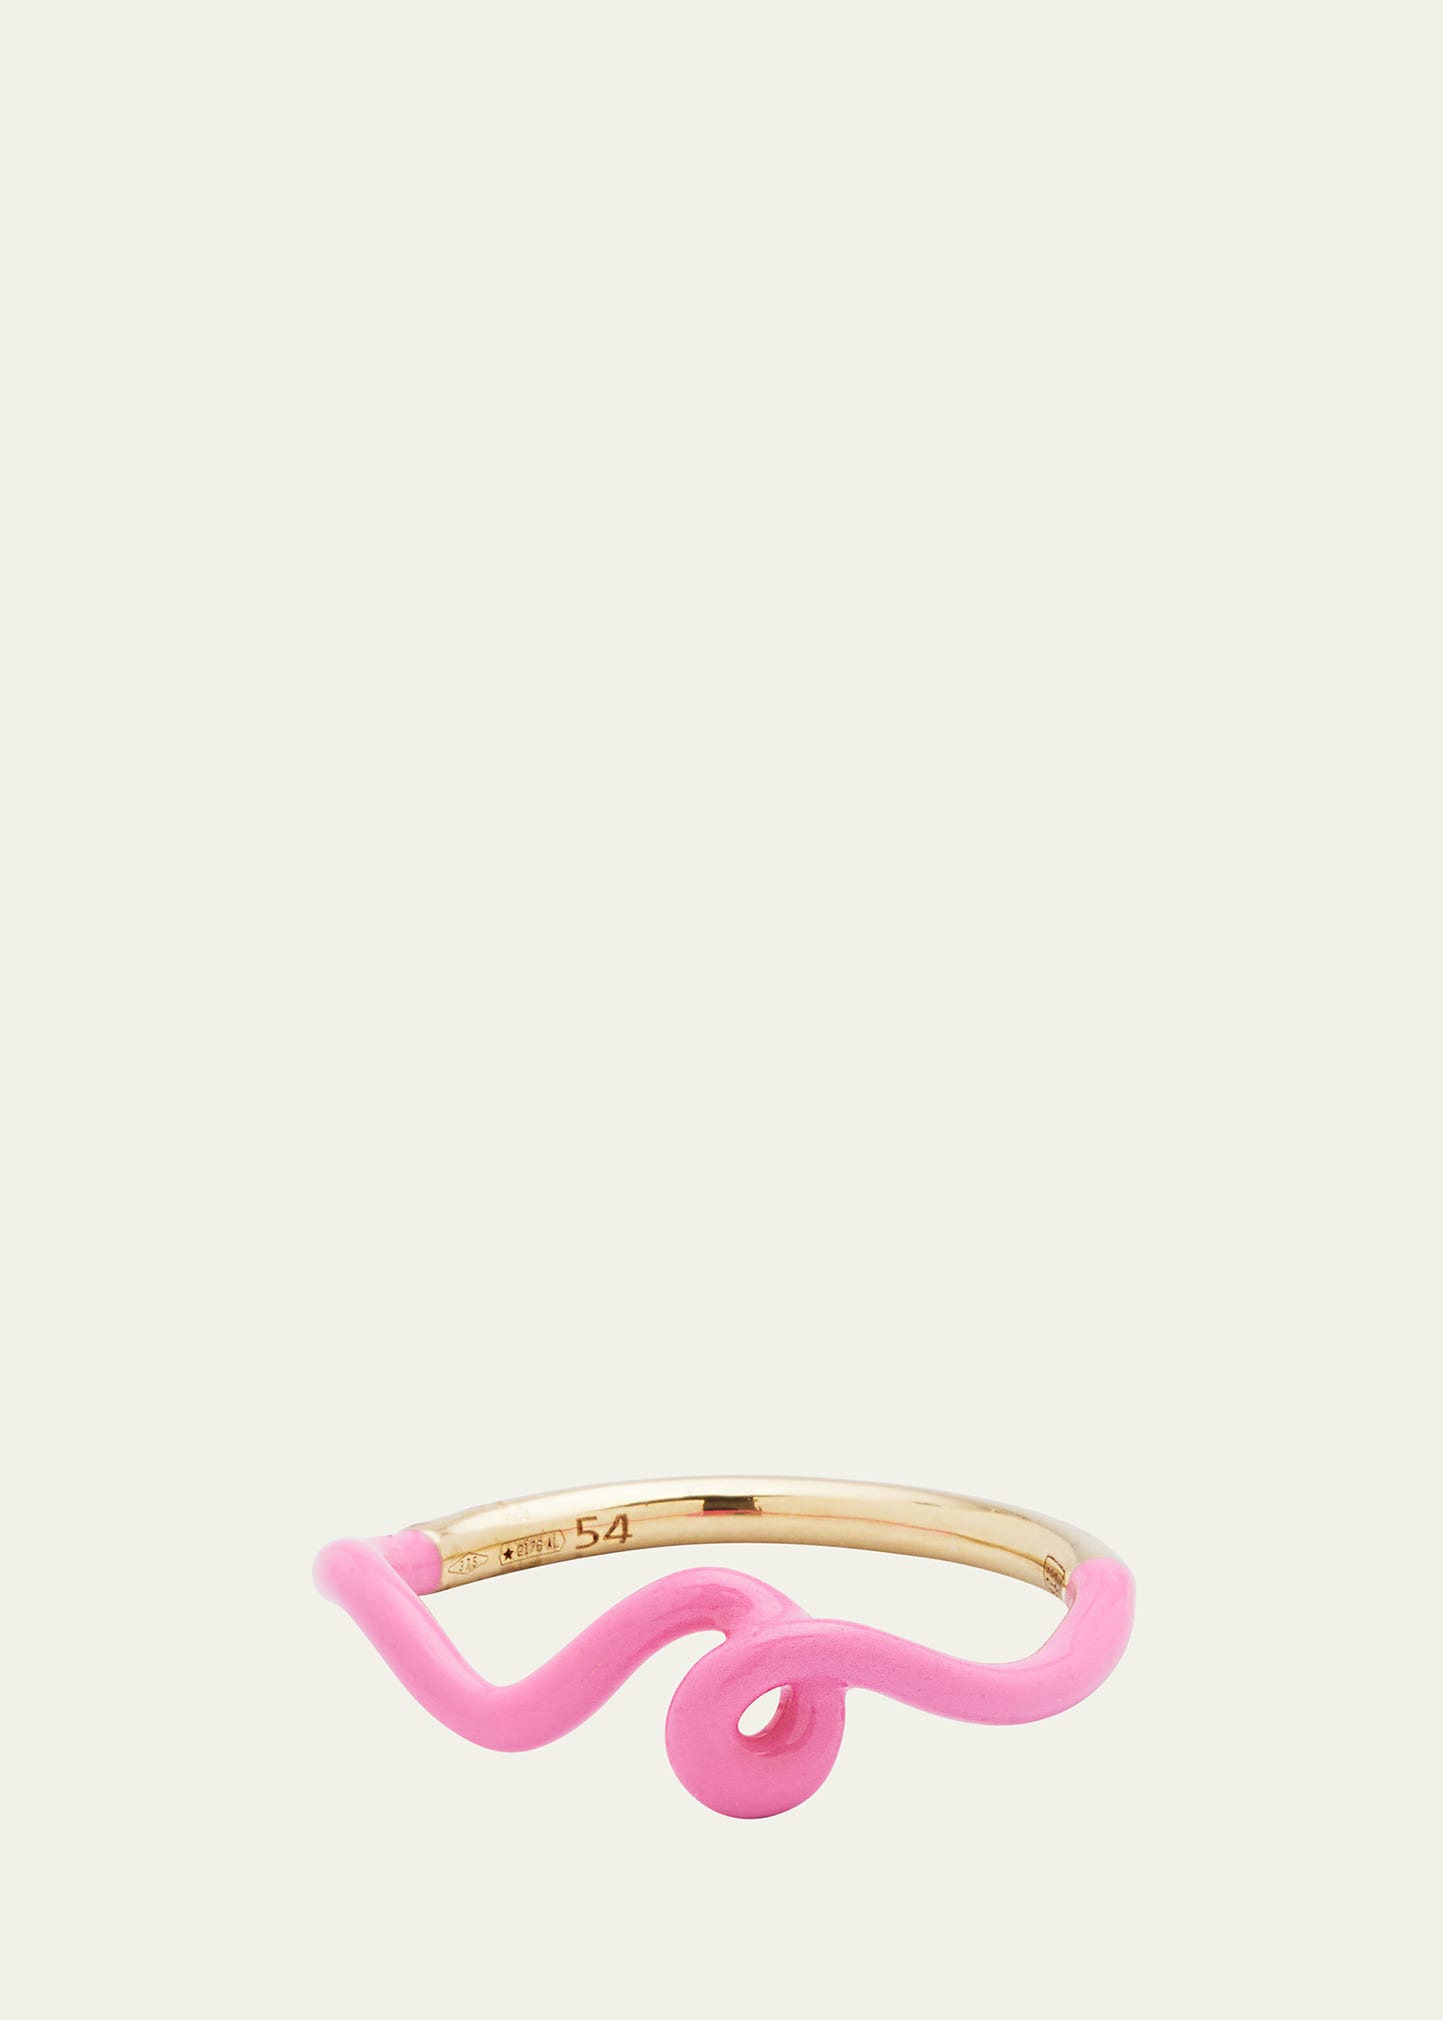 Bea Bongiasca Wow Mini Mono Ring with Bubblegum Pink Enamel